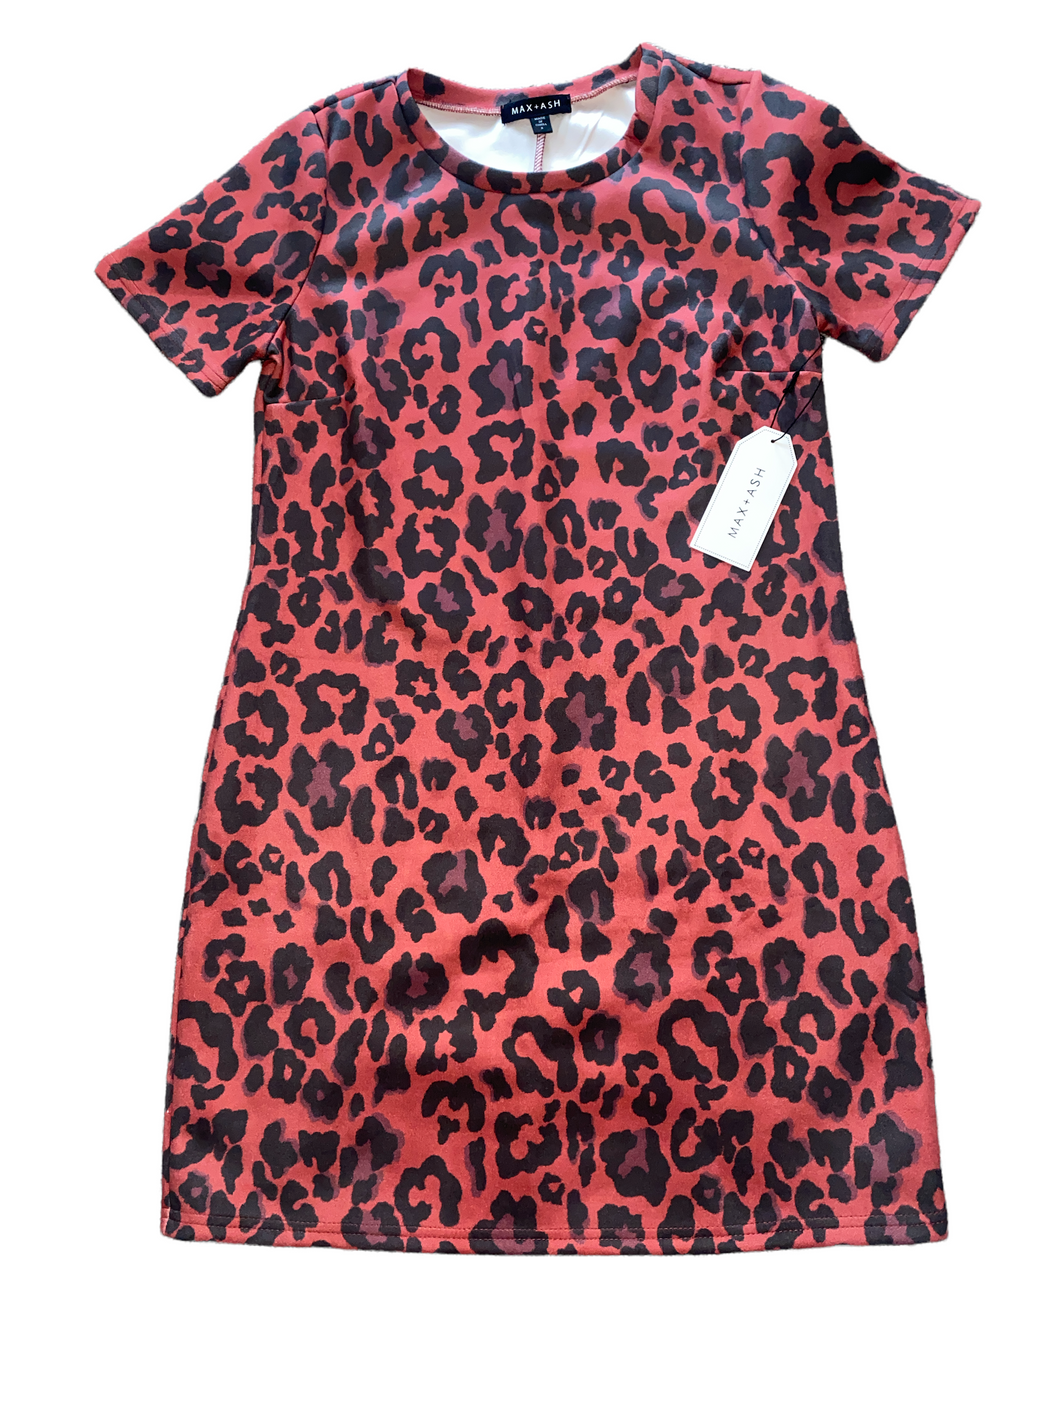 Max & Ash women’s faux suede leopard shirt dress S NEW